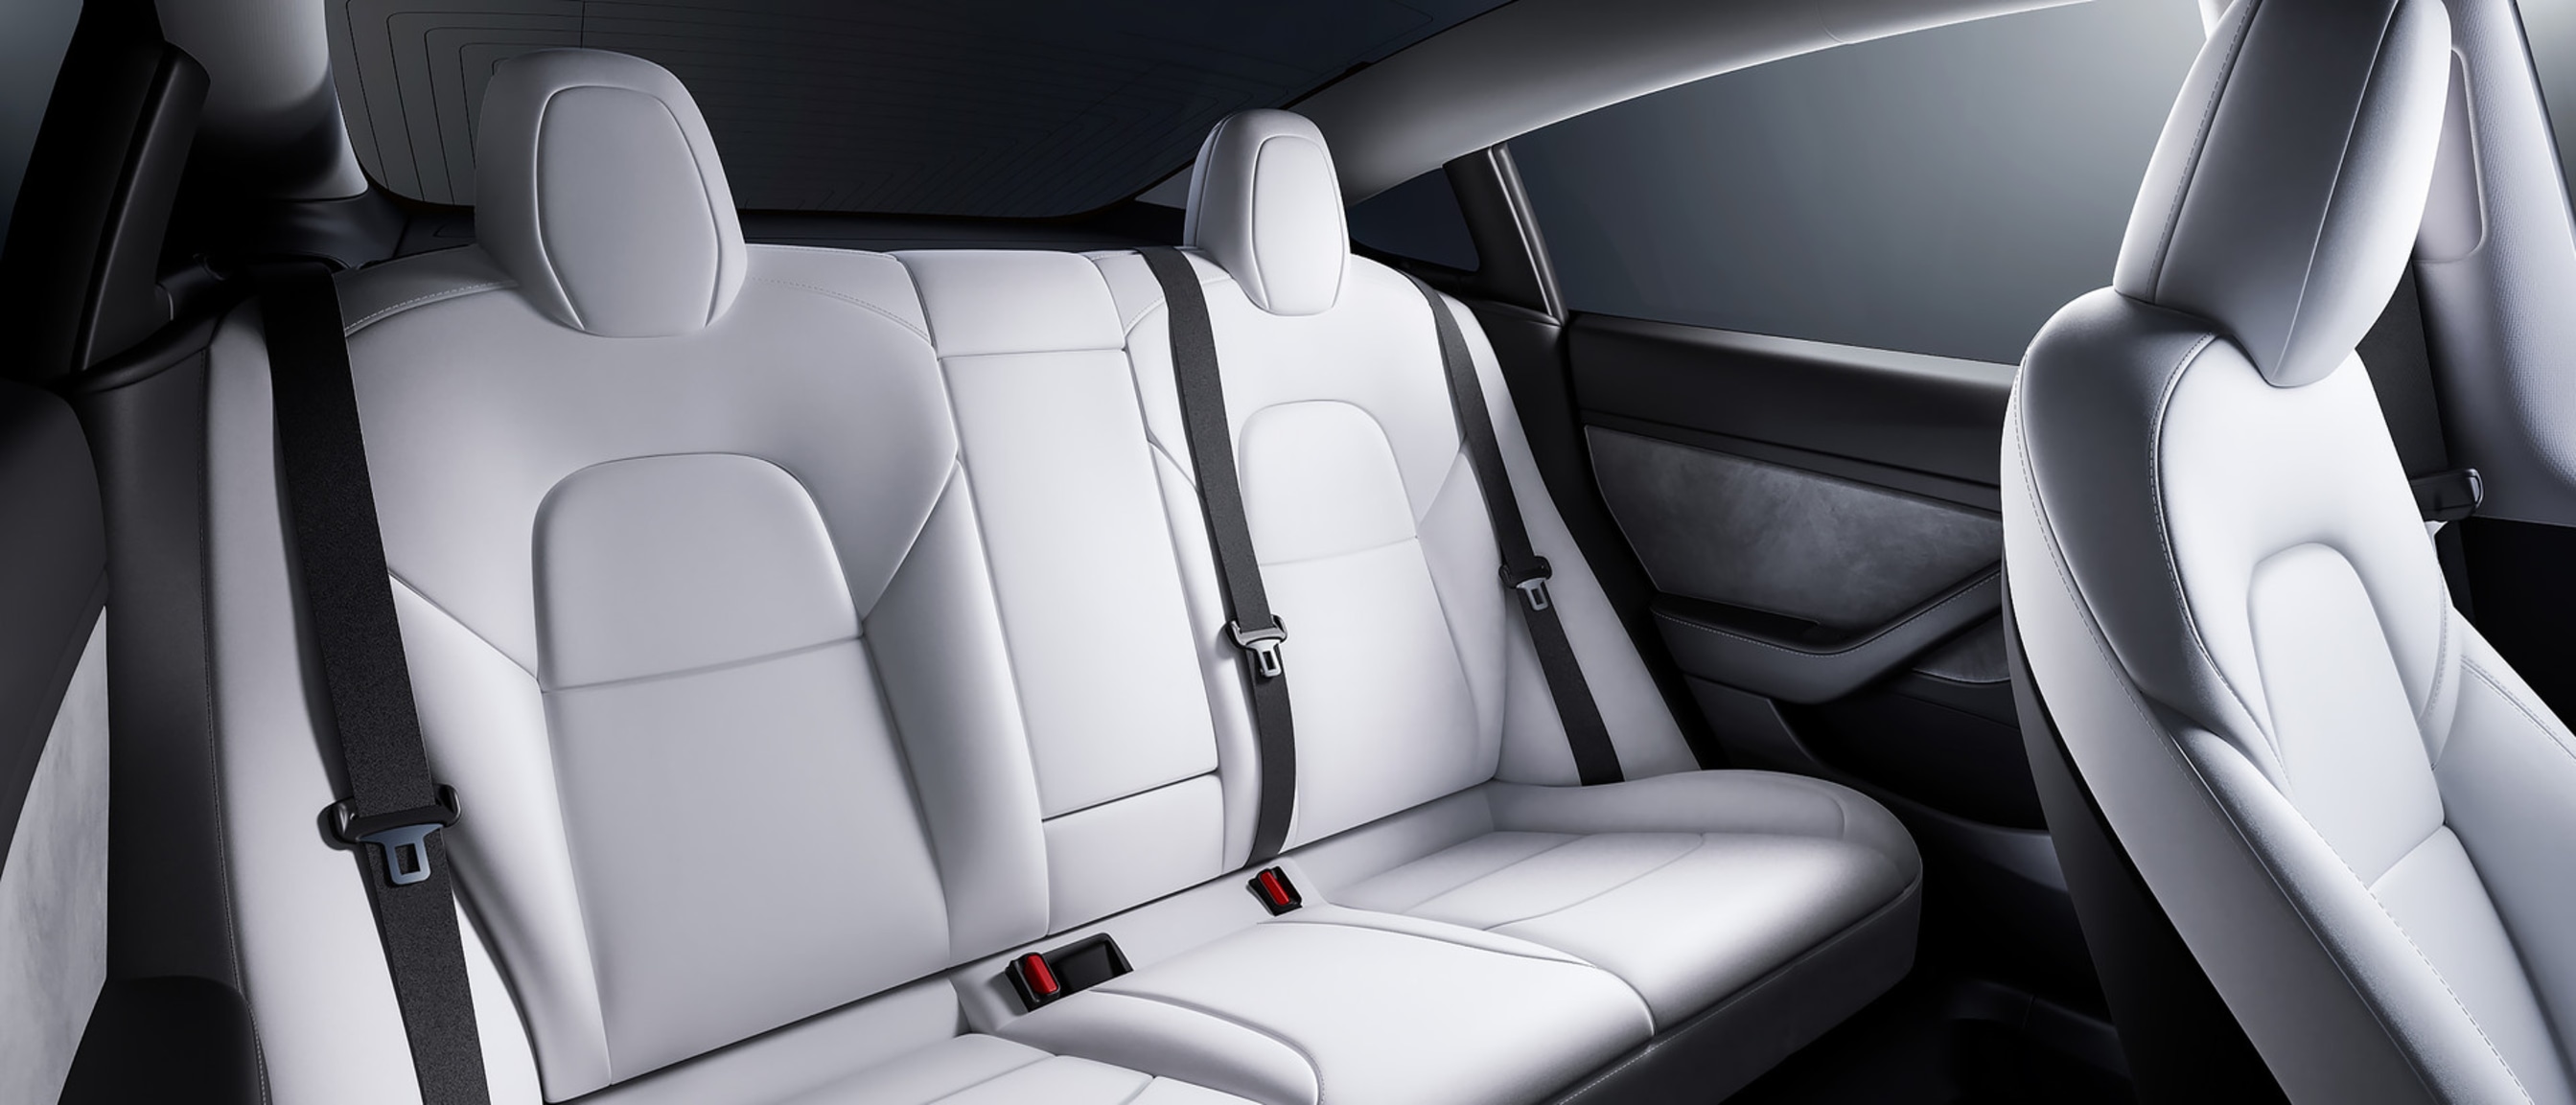 Pohled na prostorné zadní sedadlo vozu Model 3 s bílým interiérem